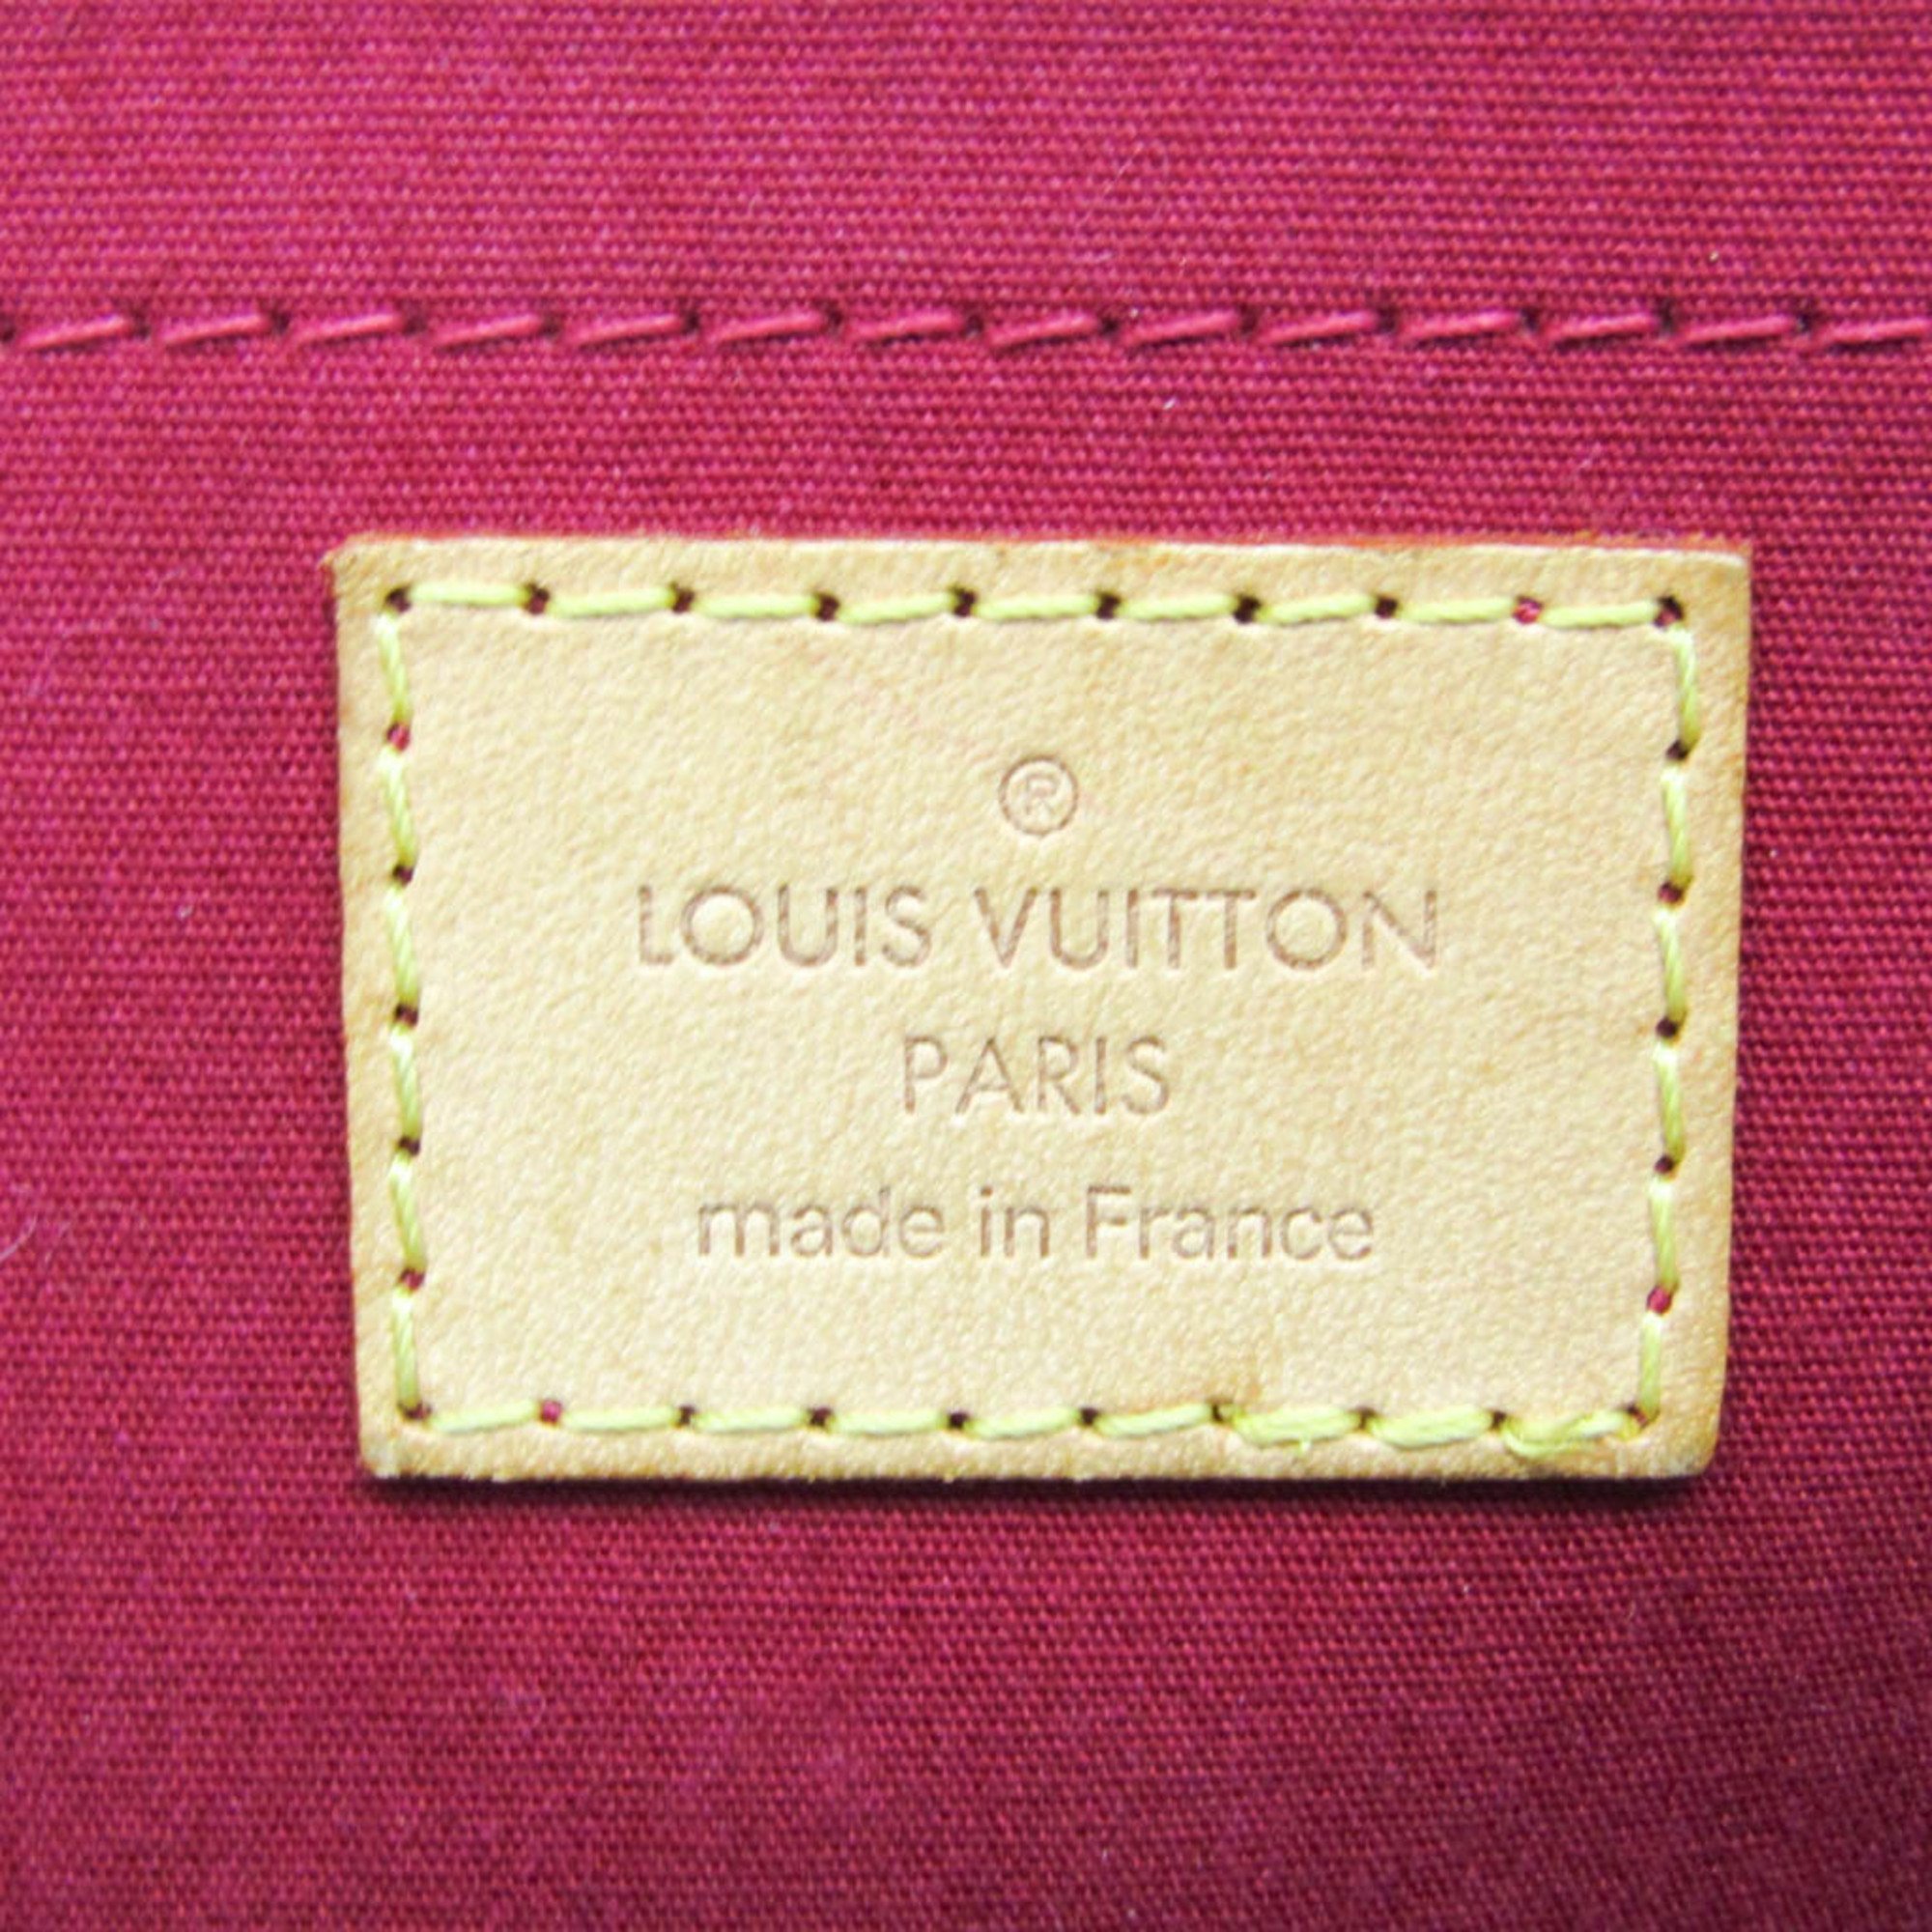 Louis Vuitton Monogram Vernis Rosewood Avenue M93507 Women's Shoulder Bag Pomme D'amour